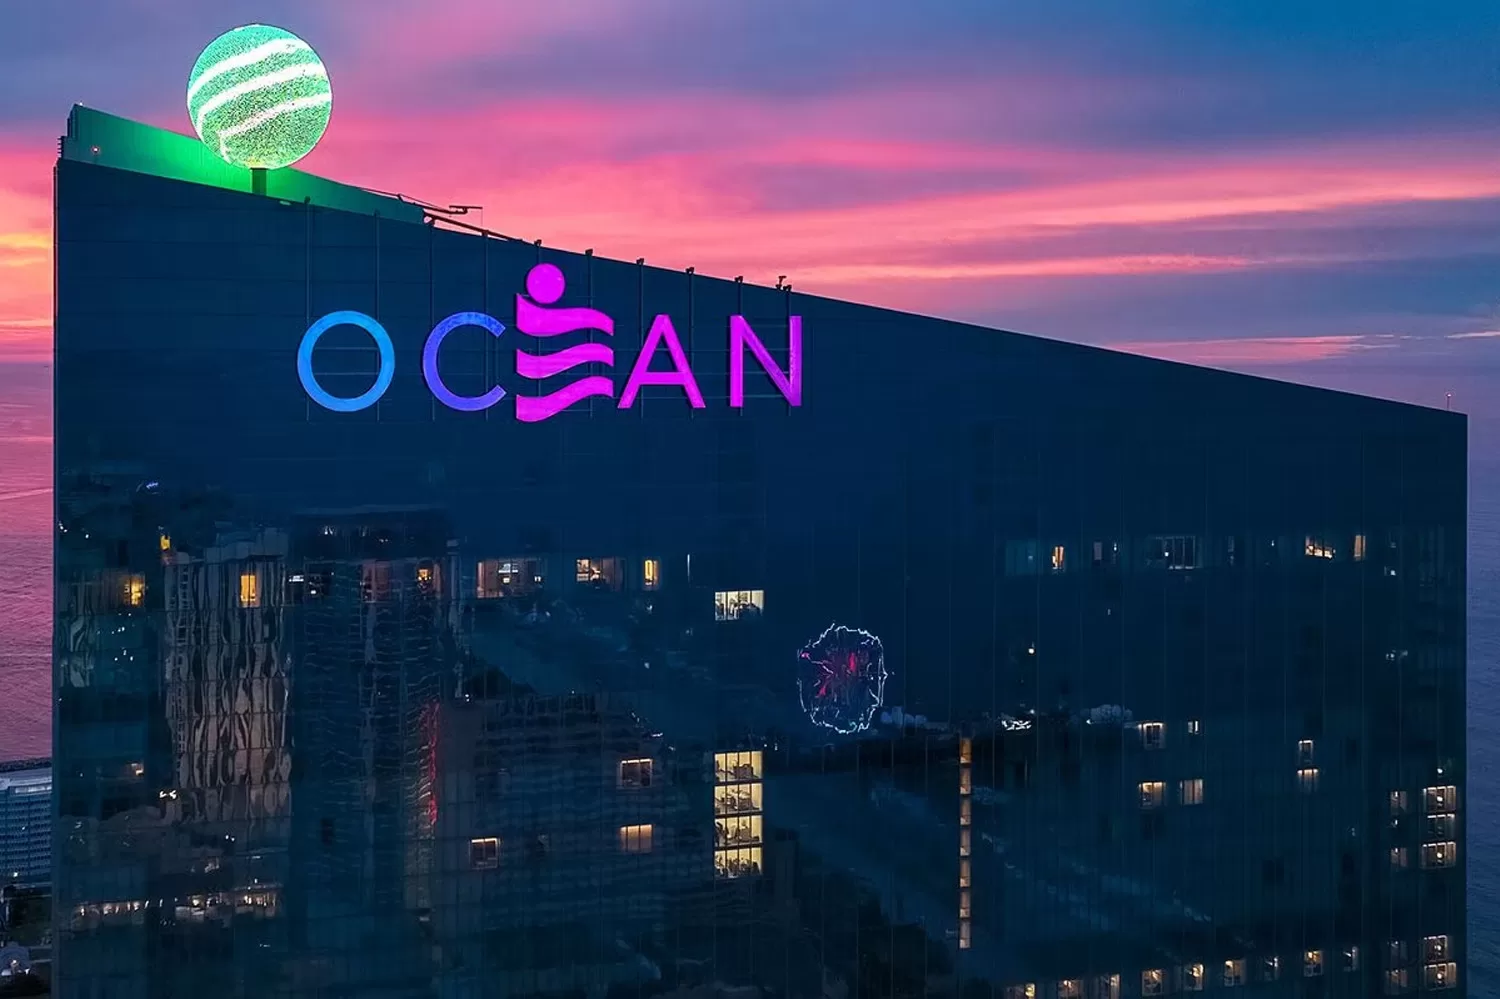 Ocean's Resort